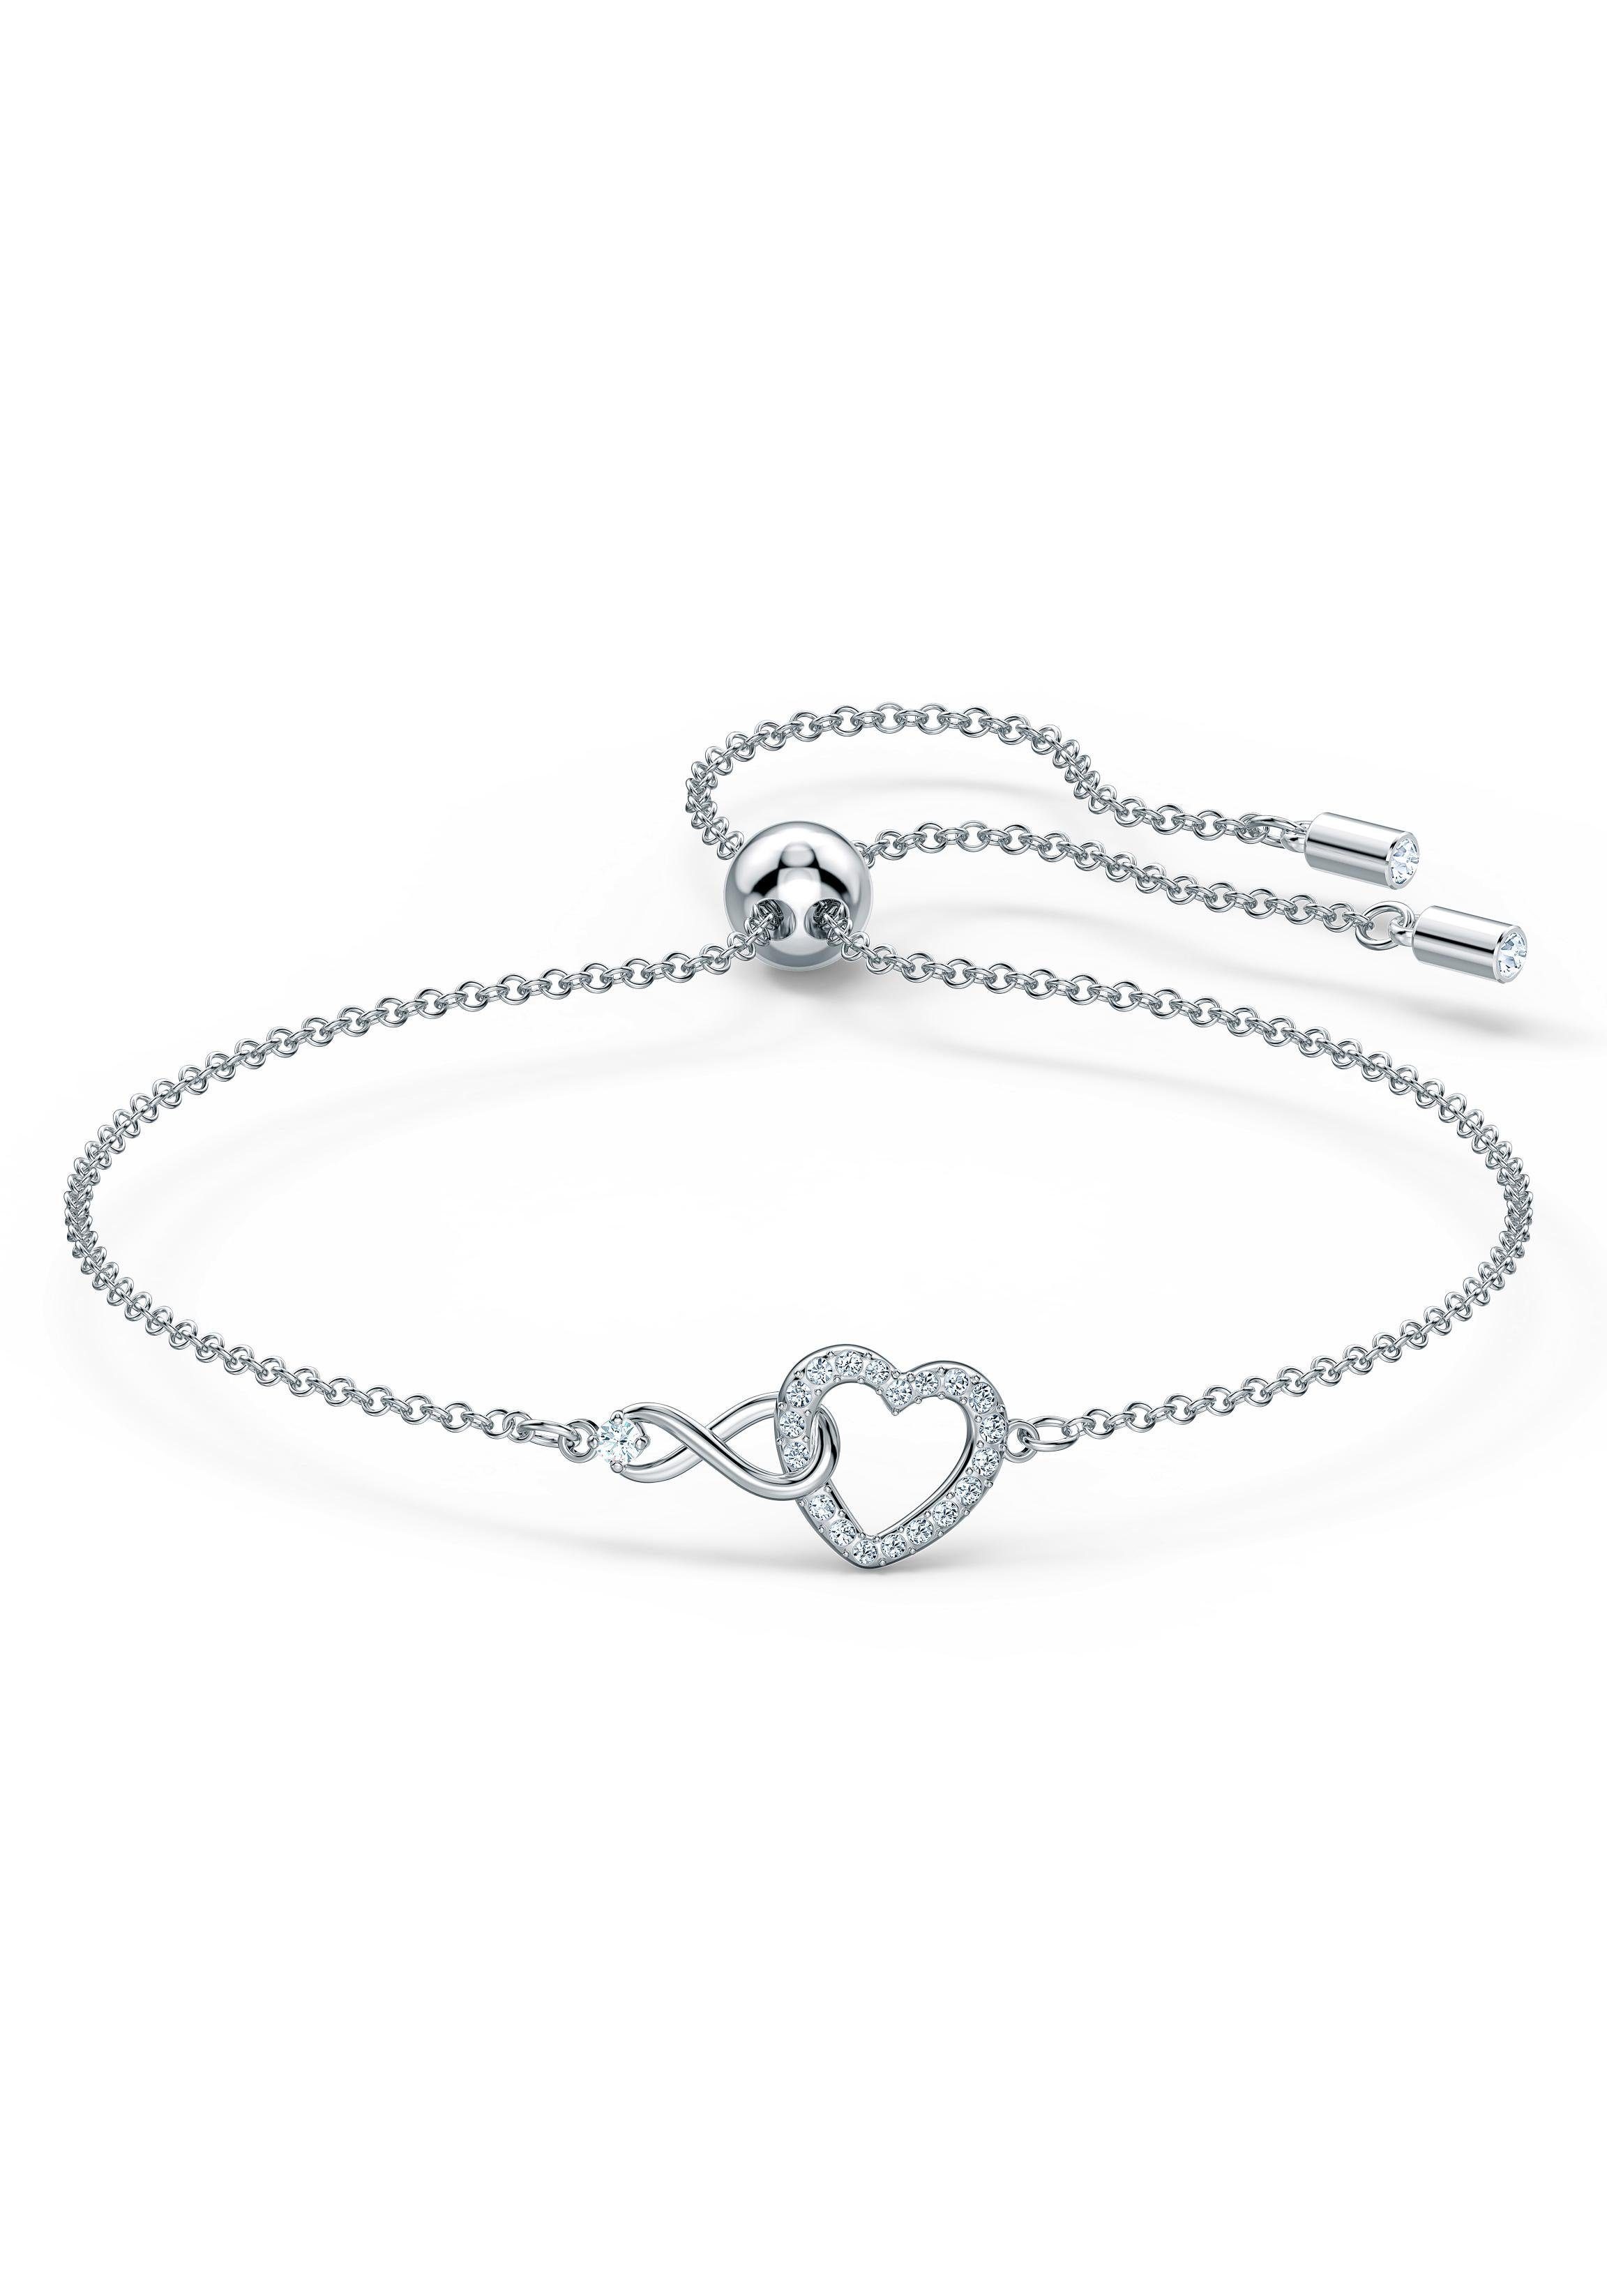 Swarovski Armband Herz/Unendlichkeitsschleife, Infinity Heart, 5524421, mit  Swarovski® Kristallen